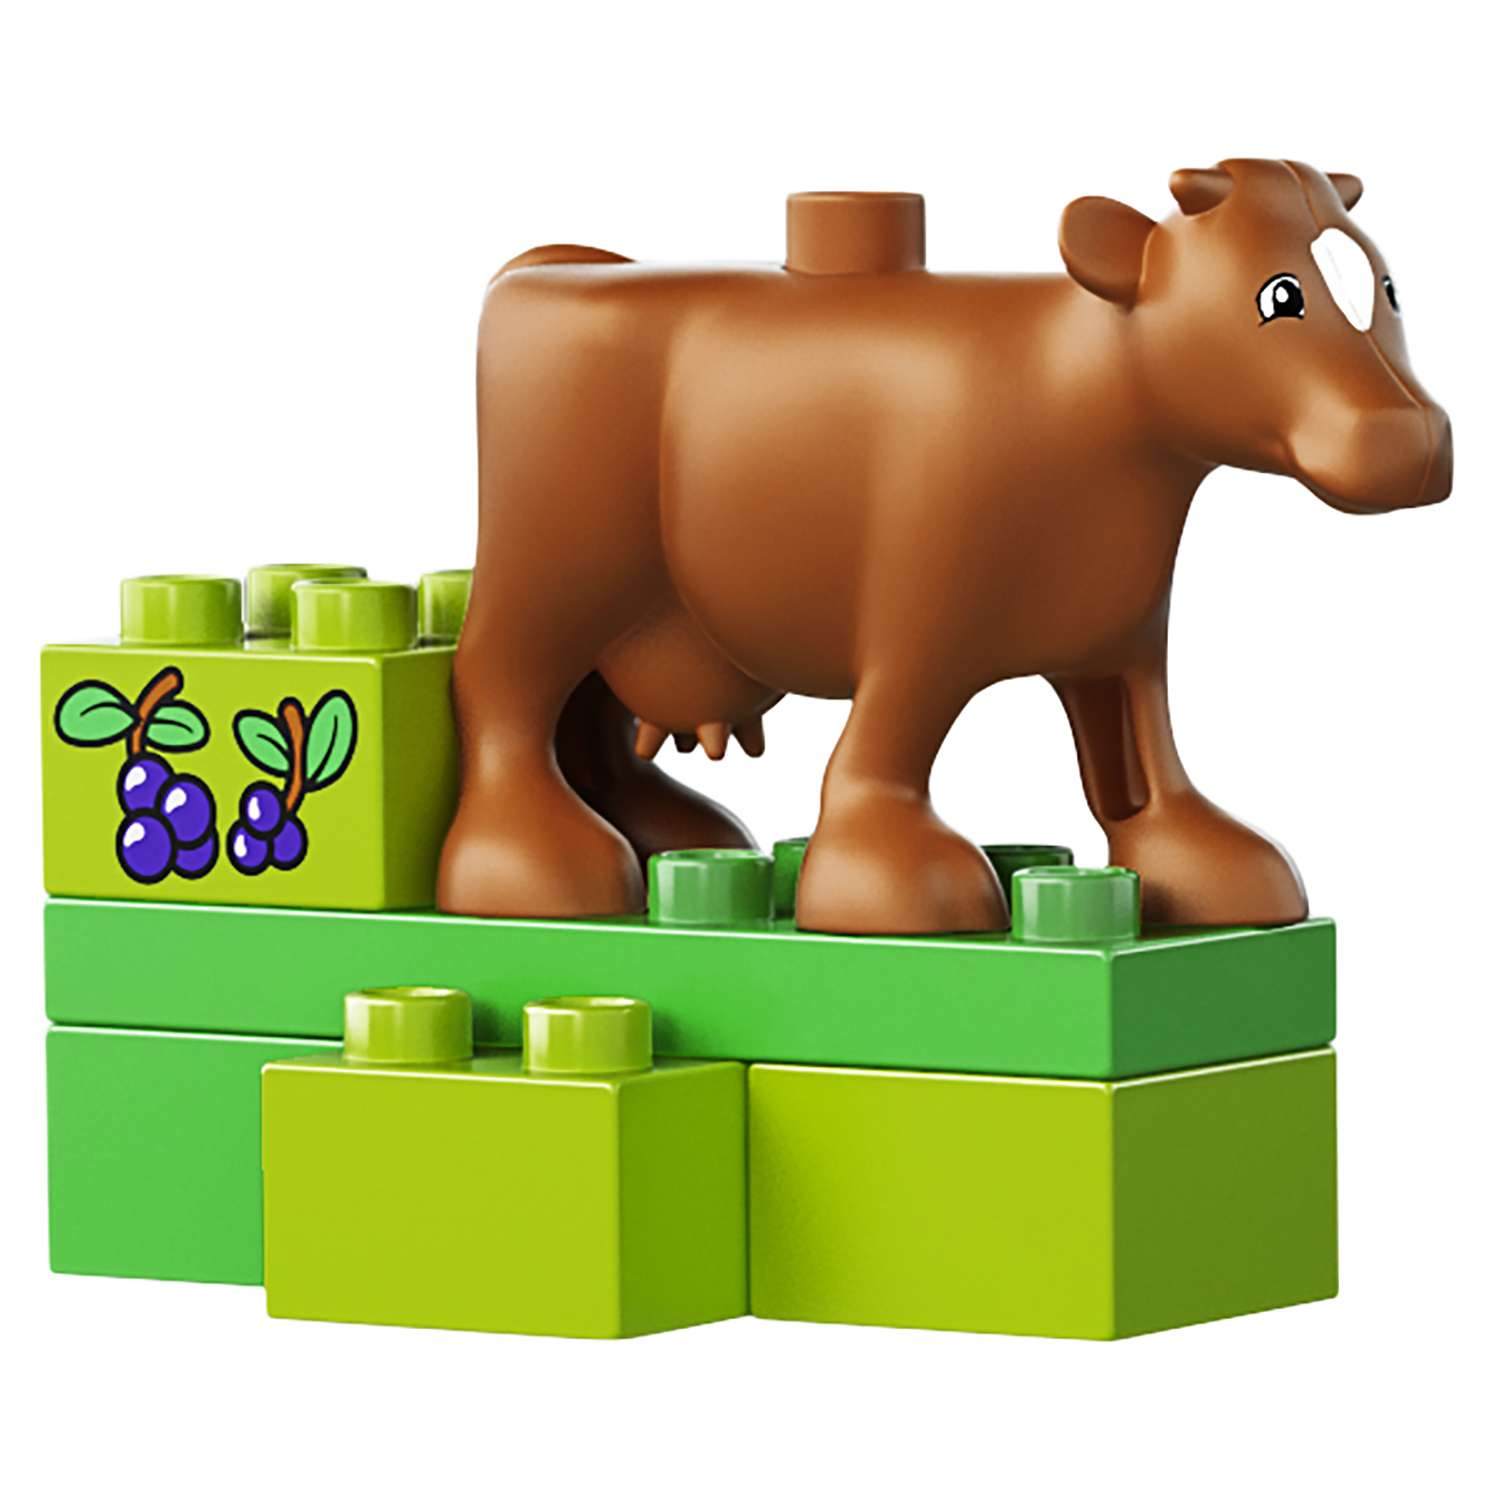 Конструктор LEGO DUPLO Town Сельскохозяйственный трактор (10524) - фото 12